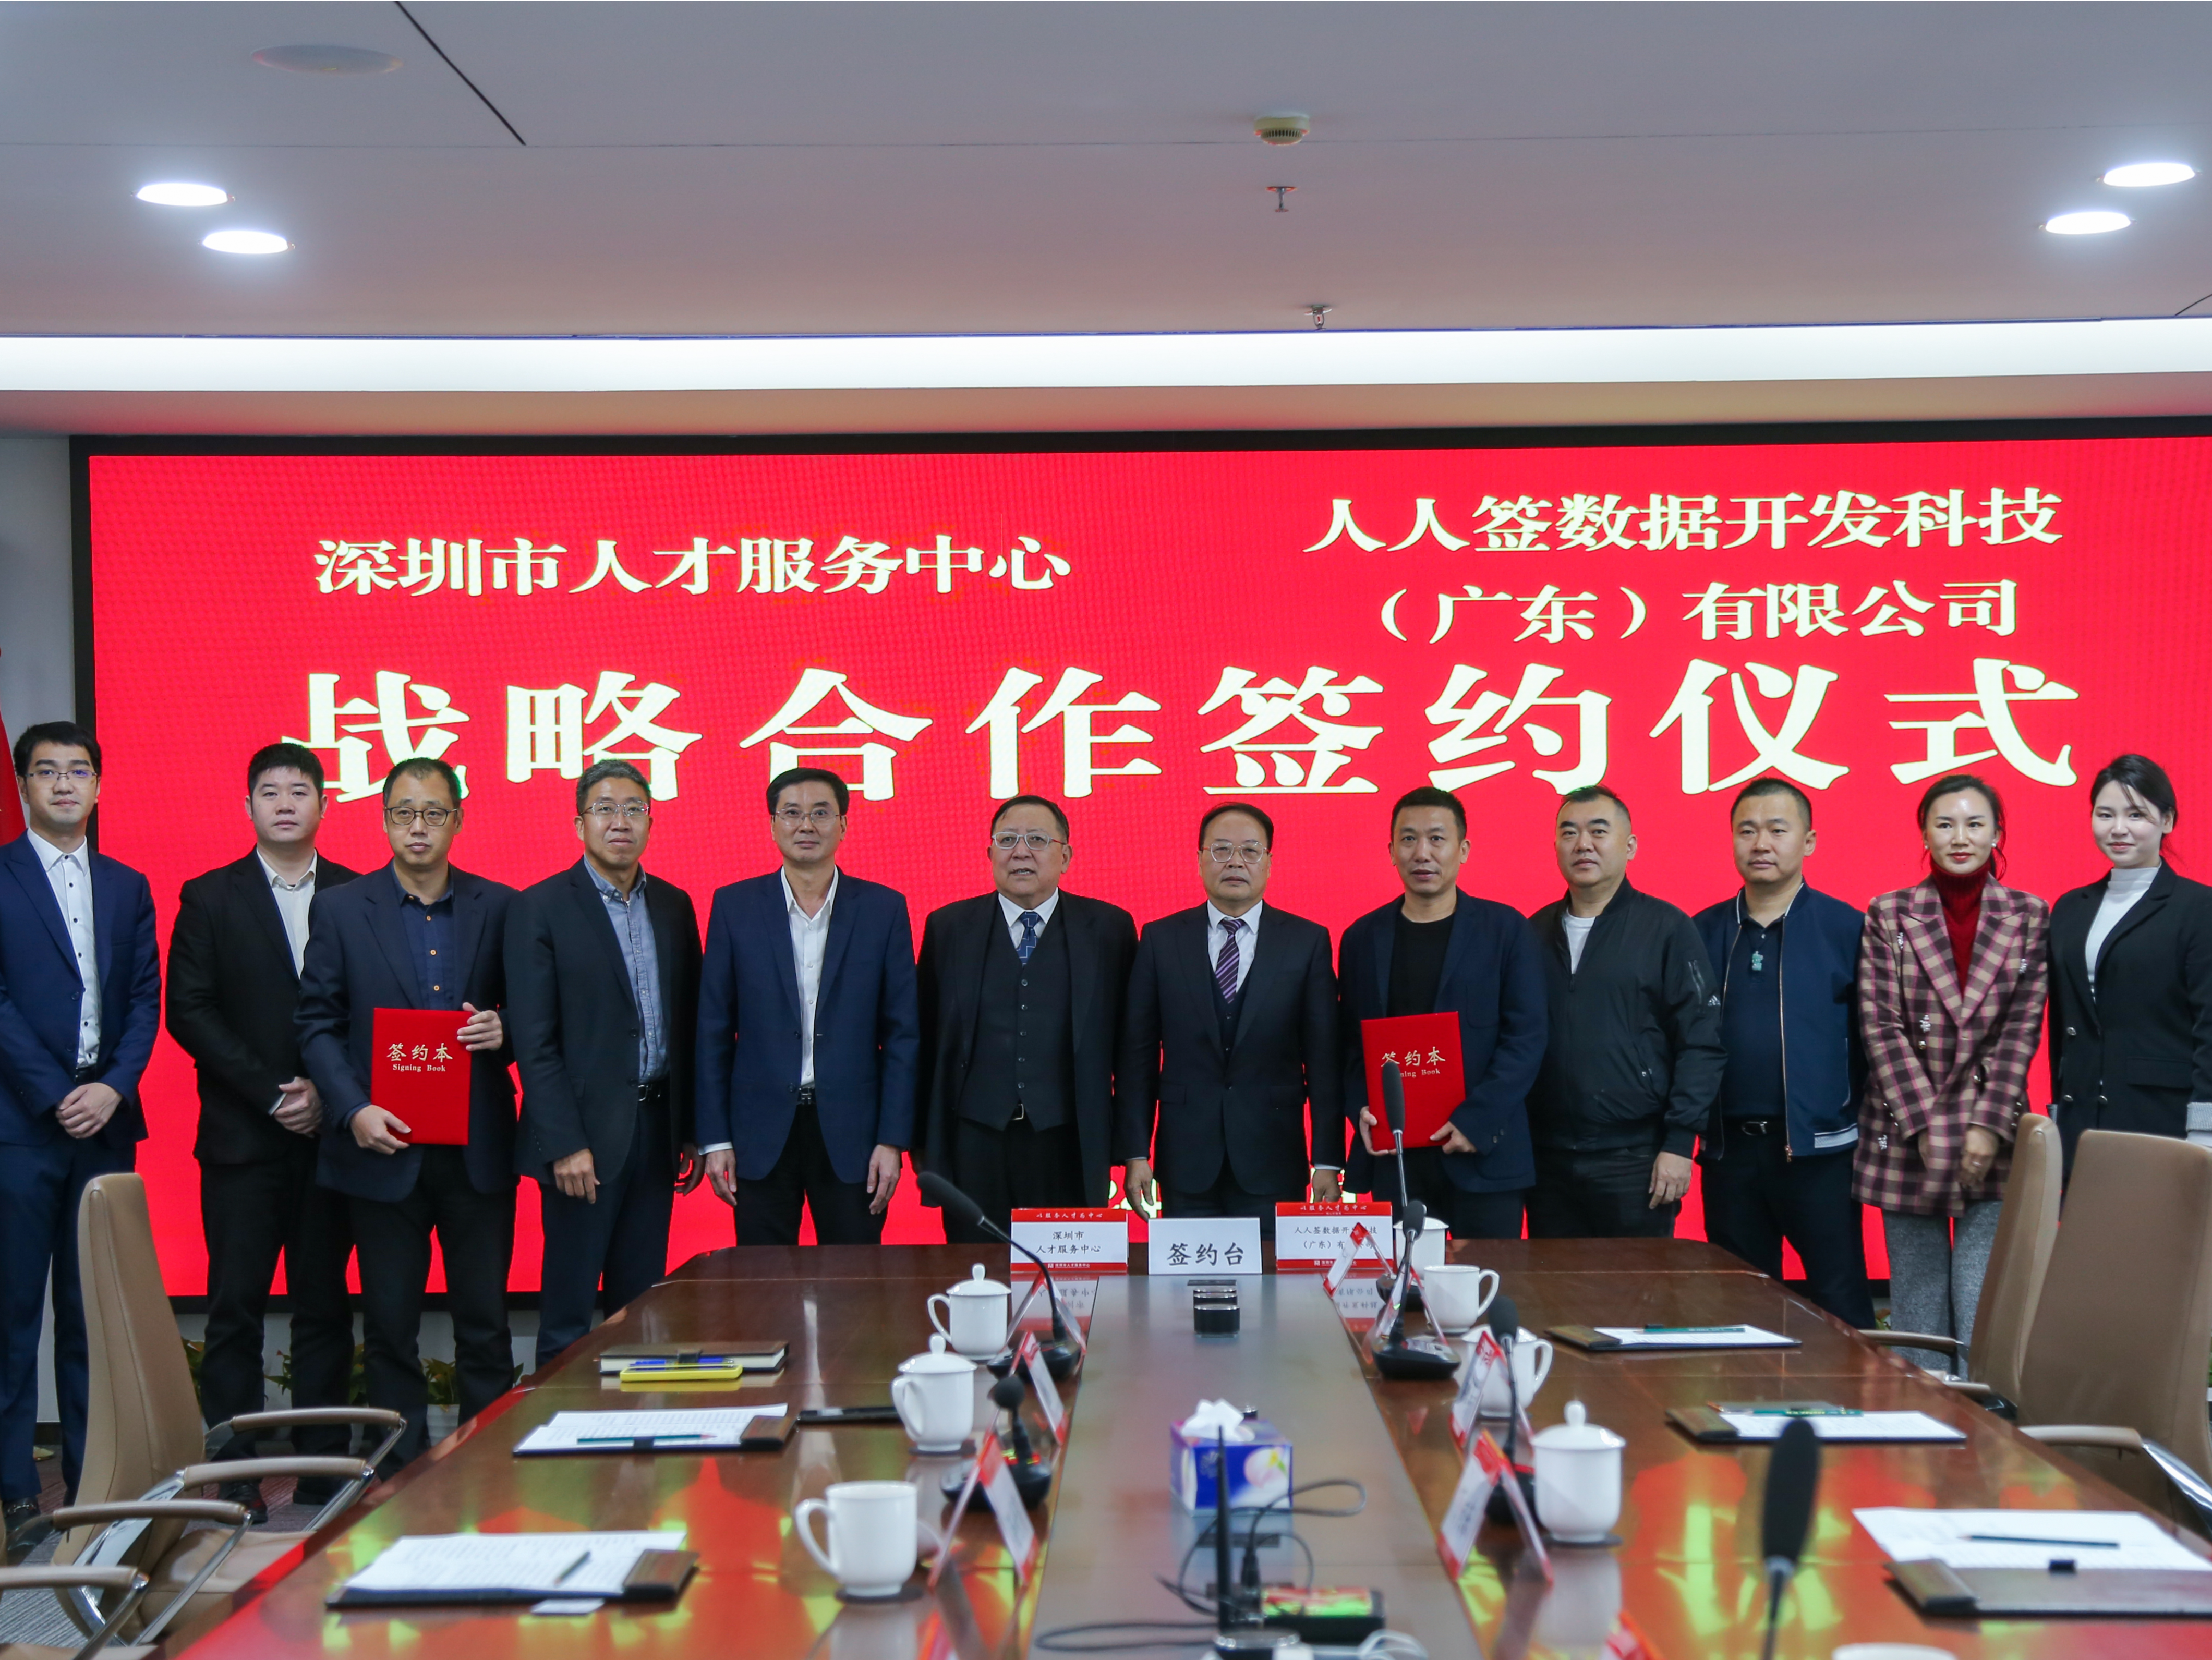 深圳市人才集团与人人签数据公司签署战略合作协议